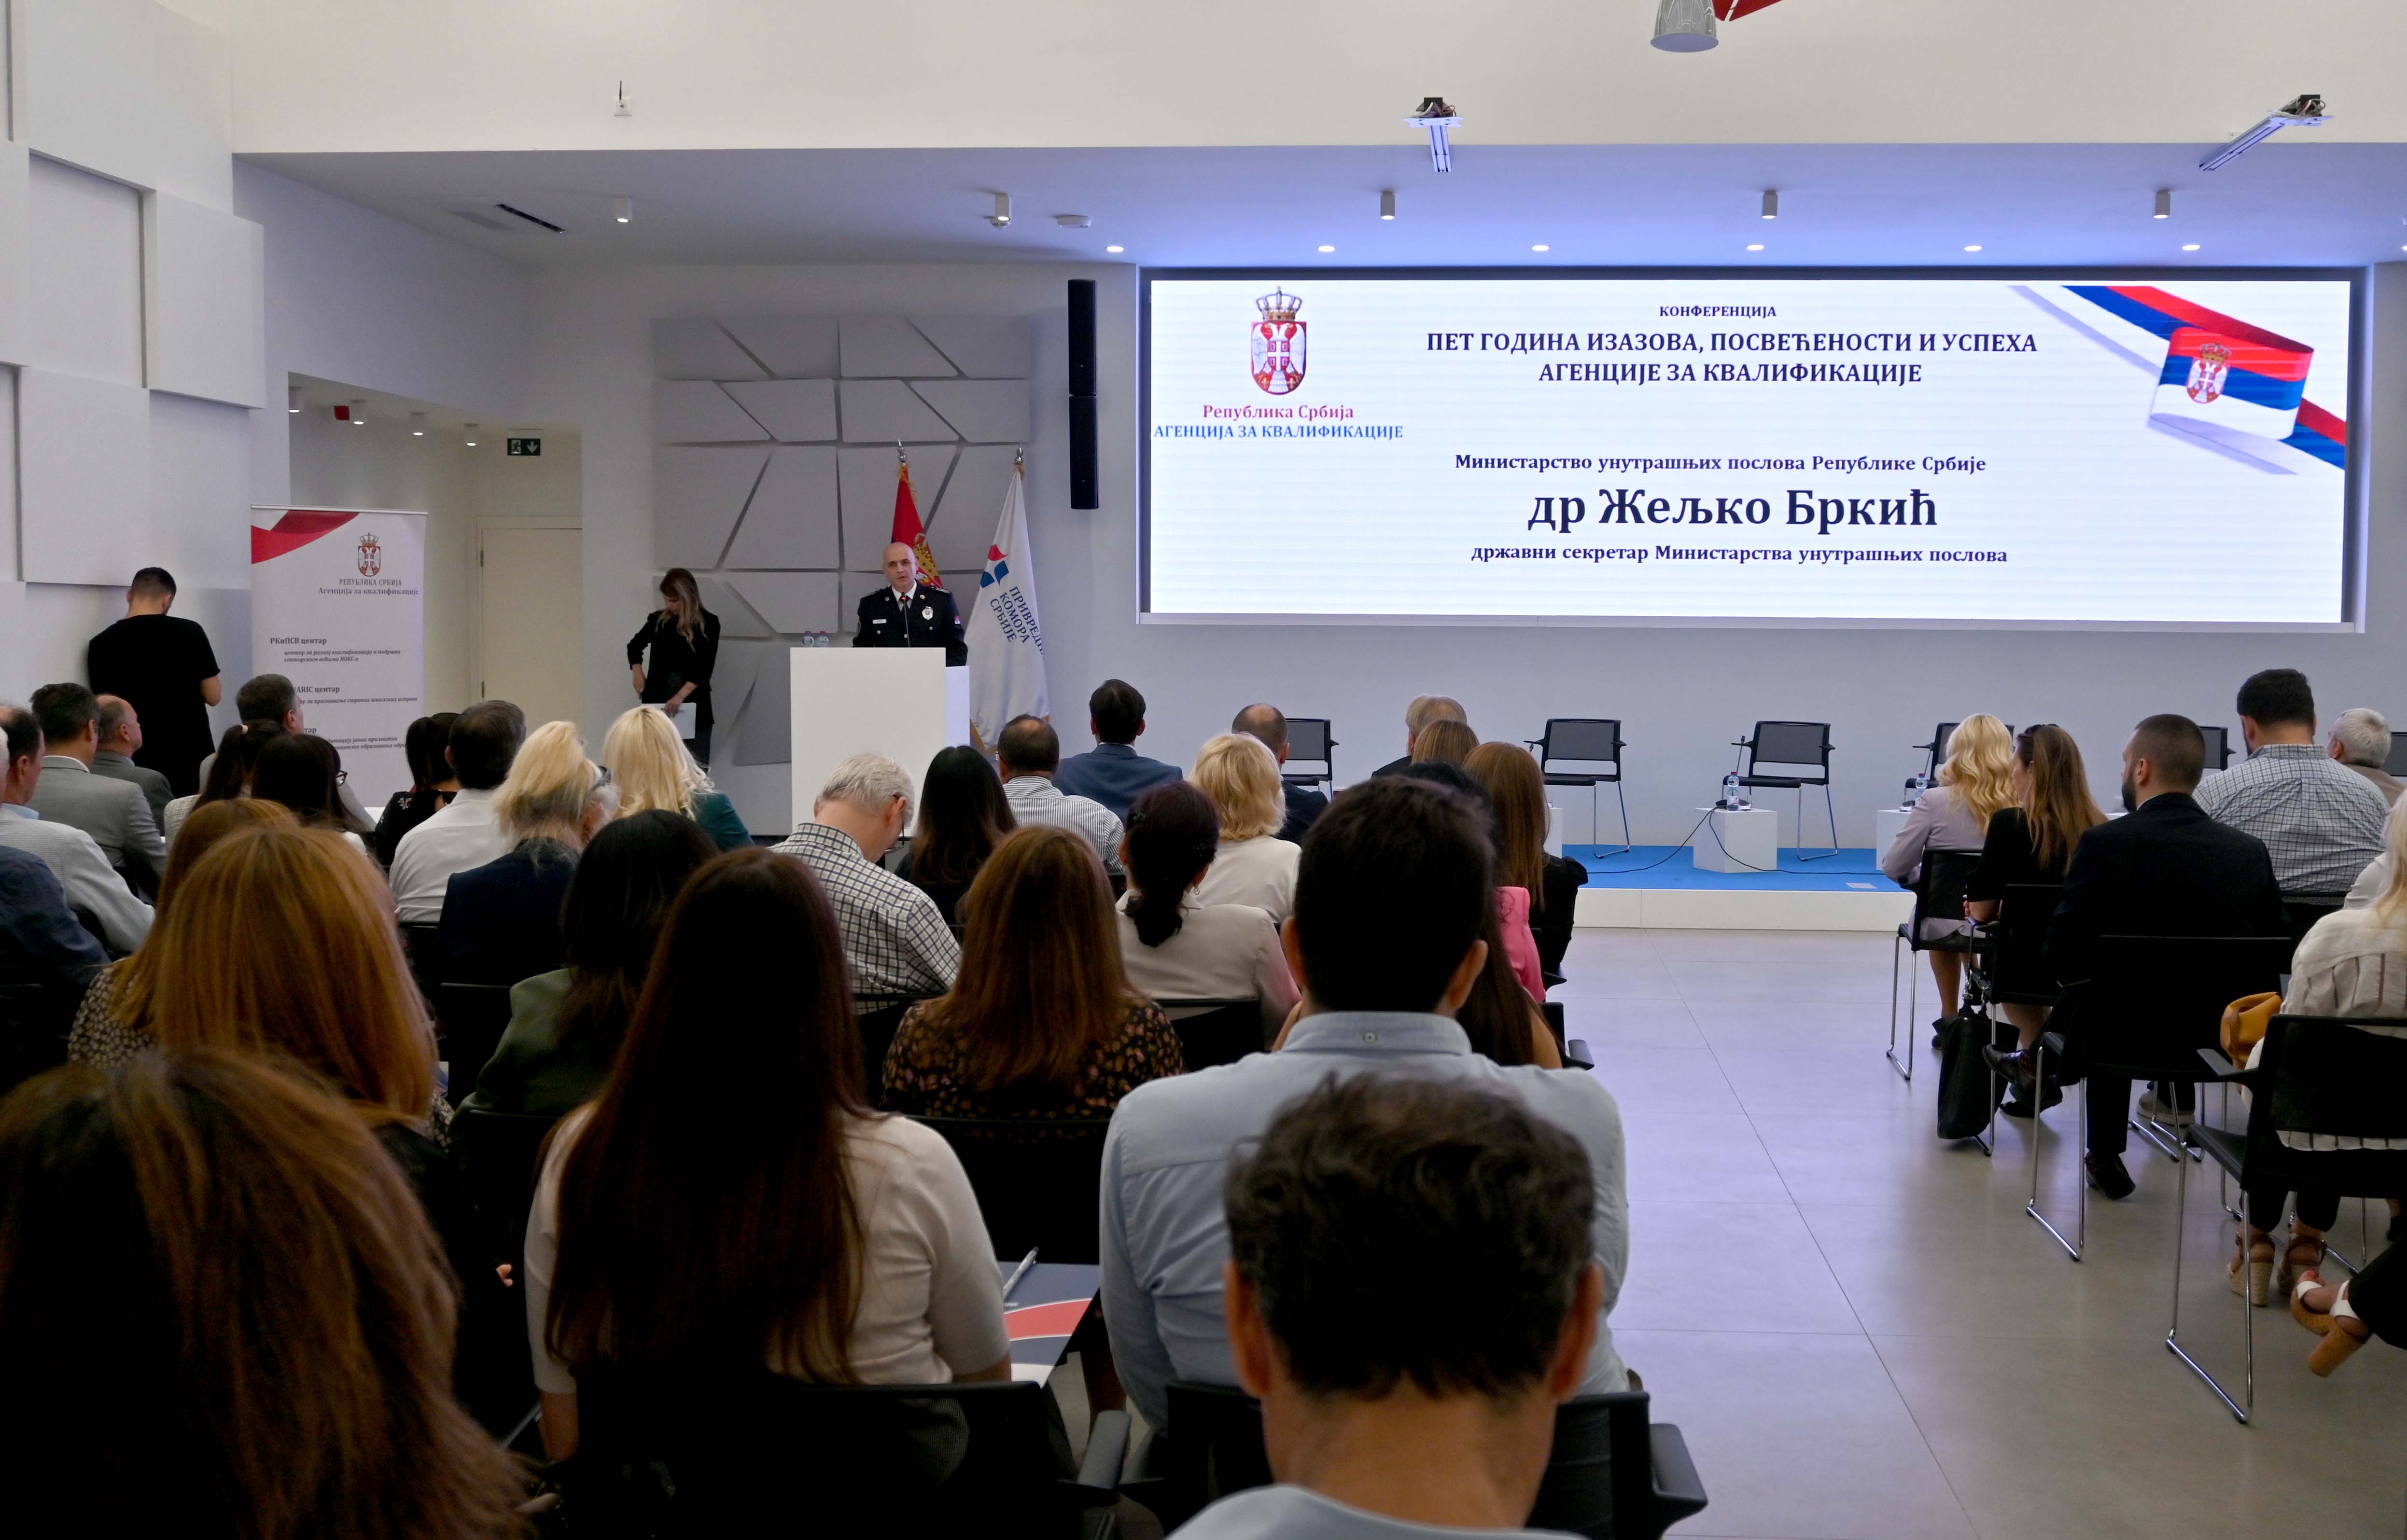 Državni sekretar dr Želјko Brkić: MUP će nastaviti da ulaže u obrazovanje policijskih službenika